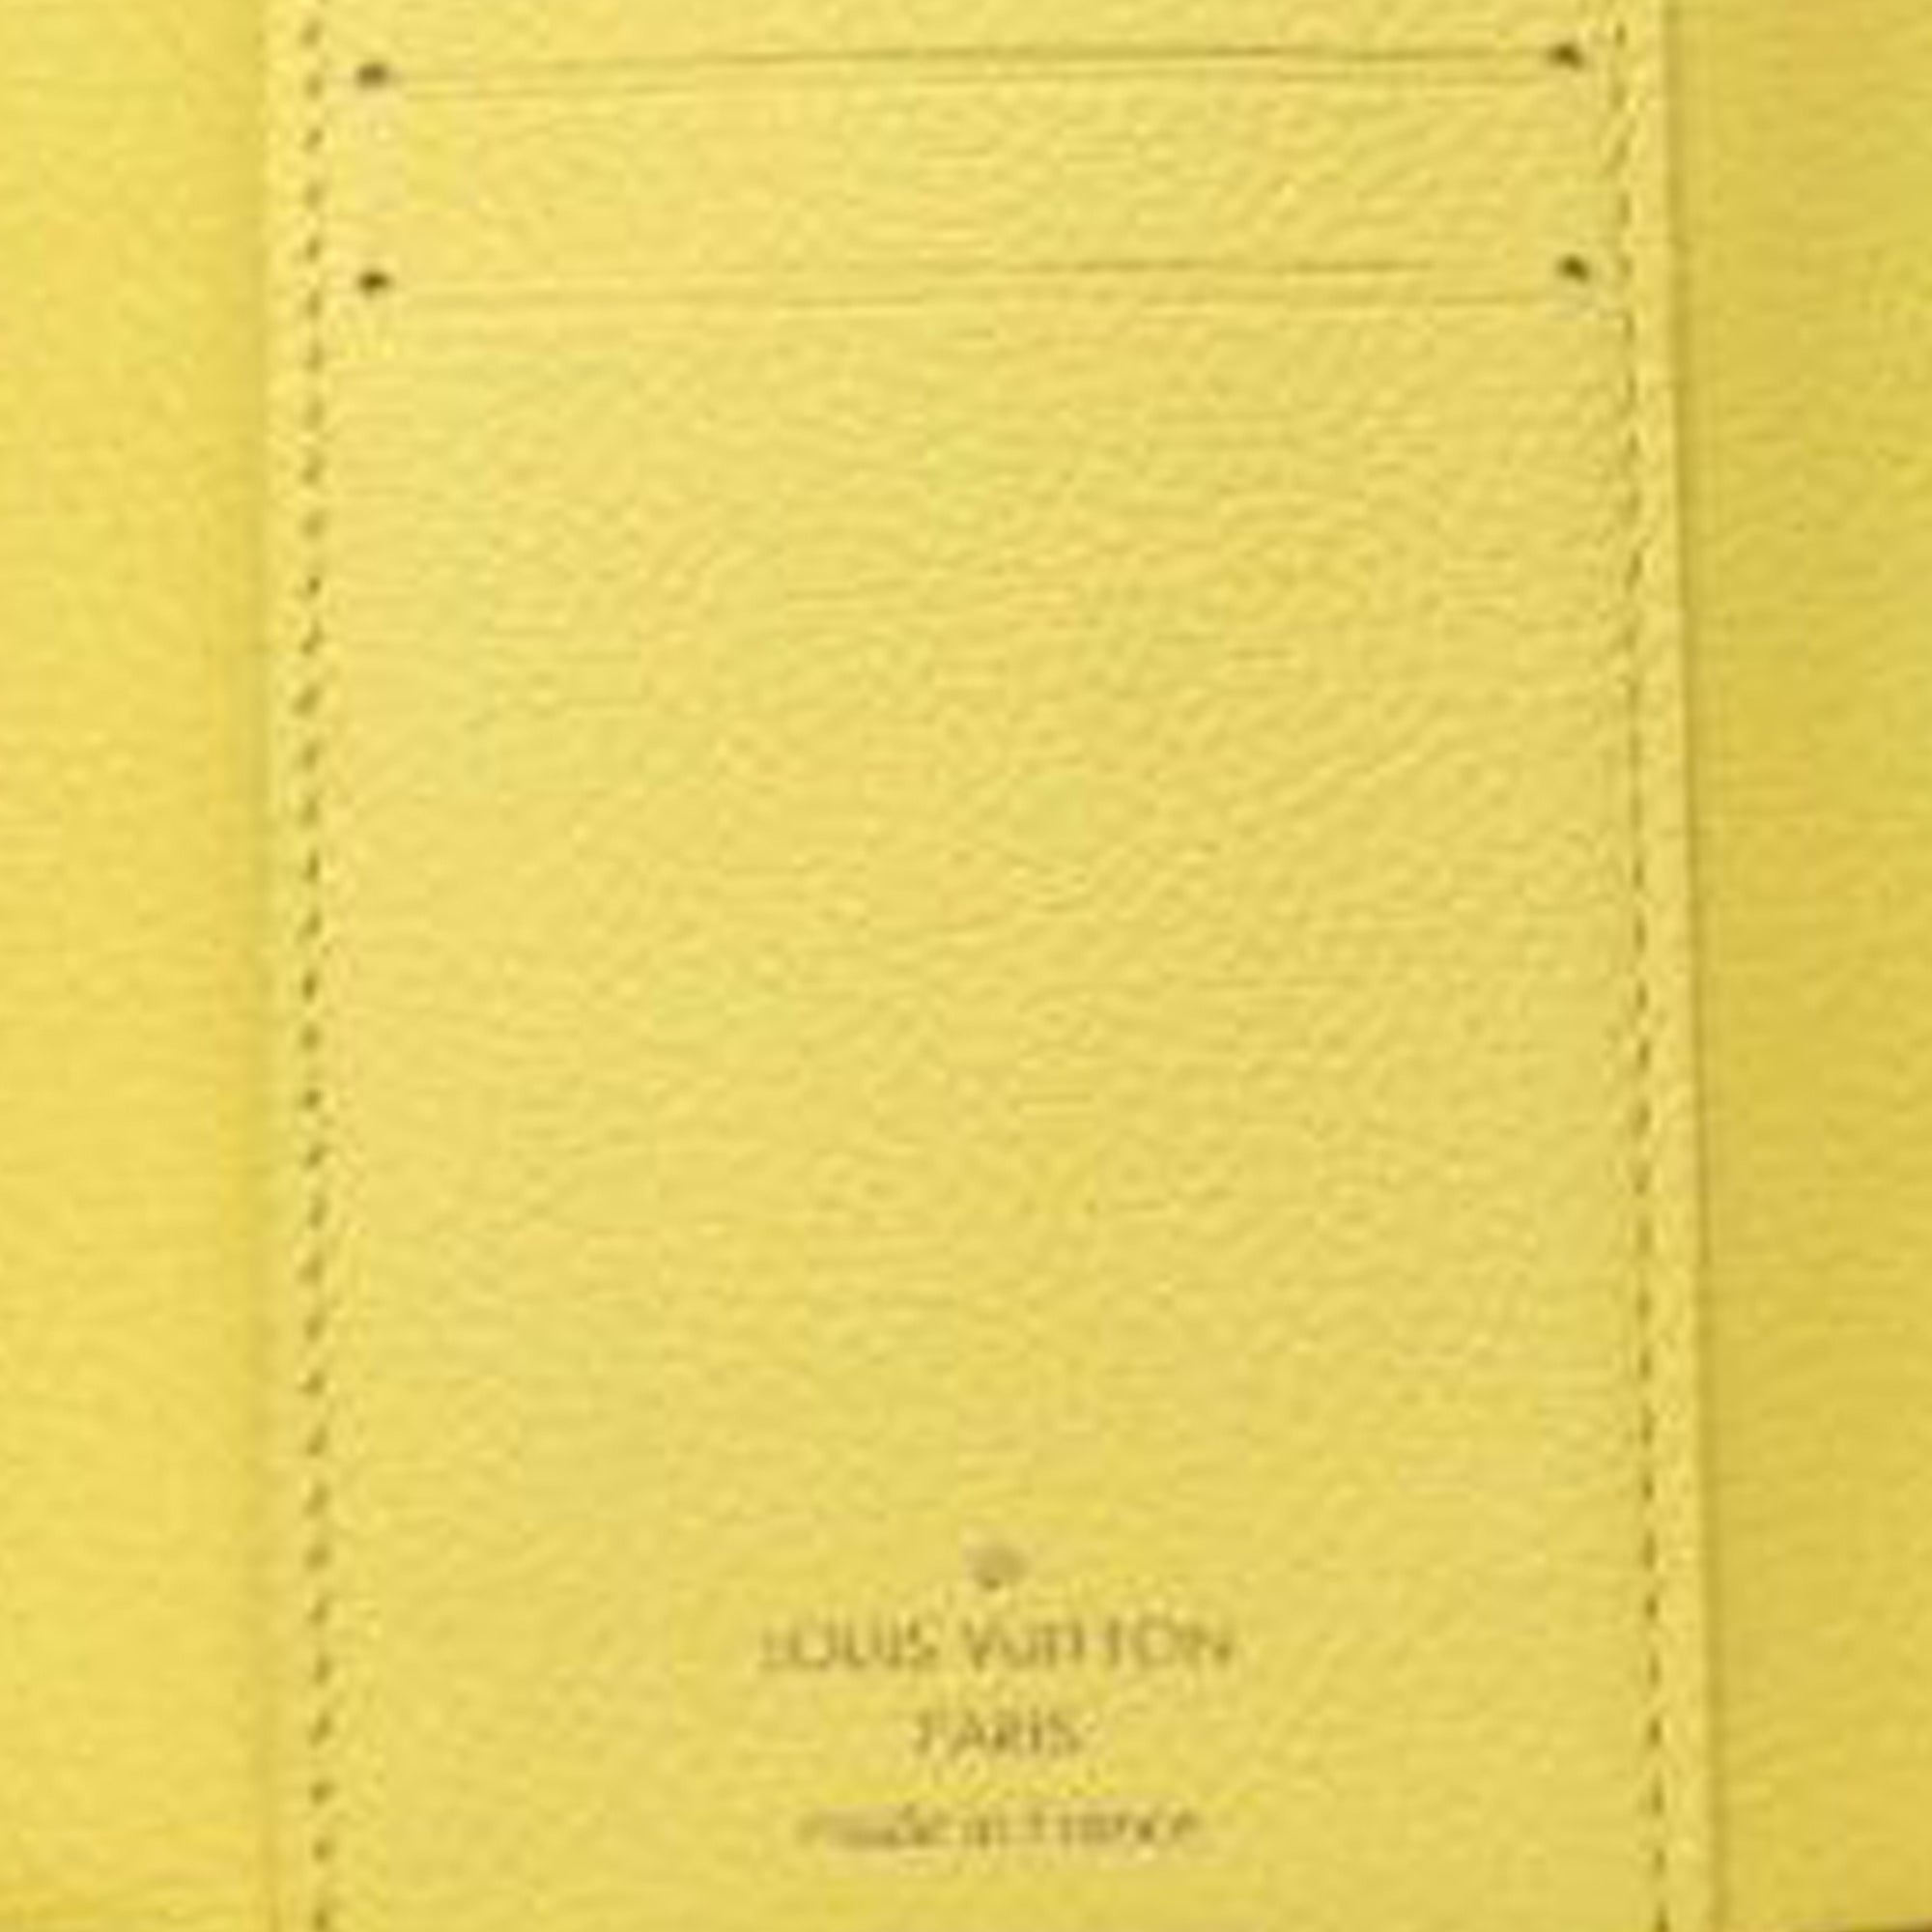 Yellow Lambskin Zip Wallet – Opulent Habits